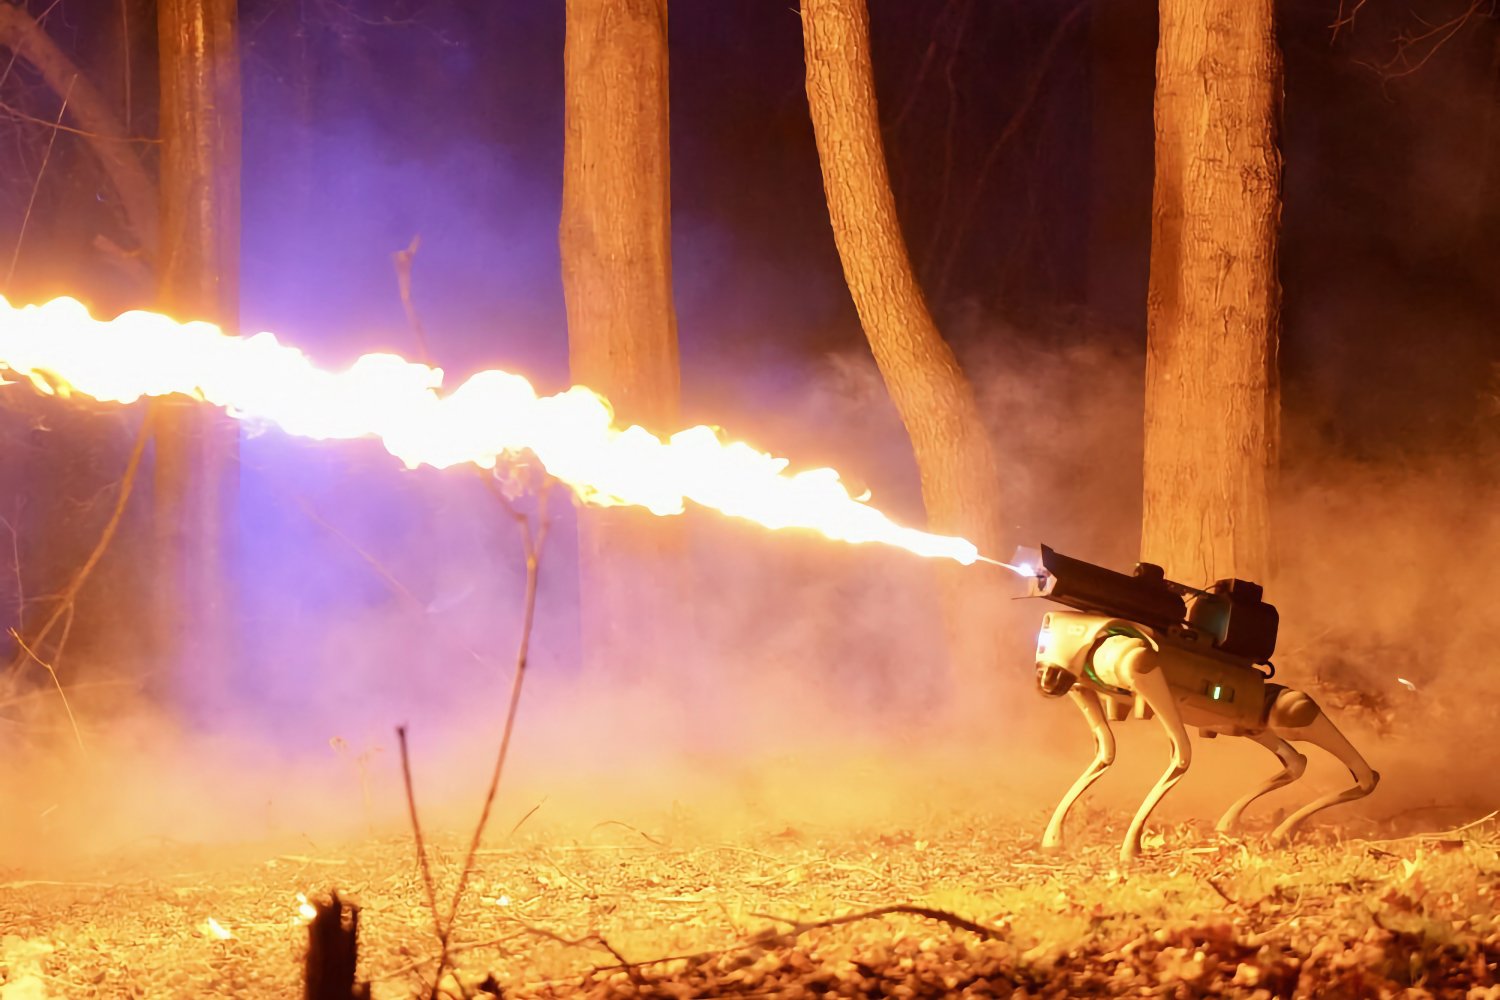 Ce chien robot met le feu, littéralement